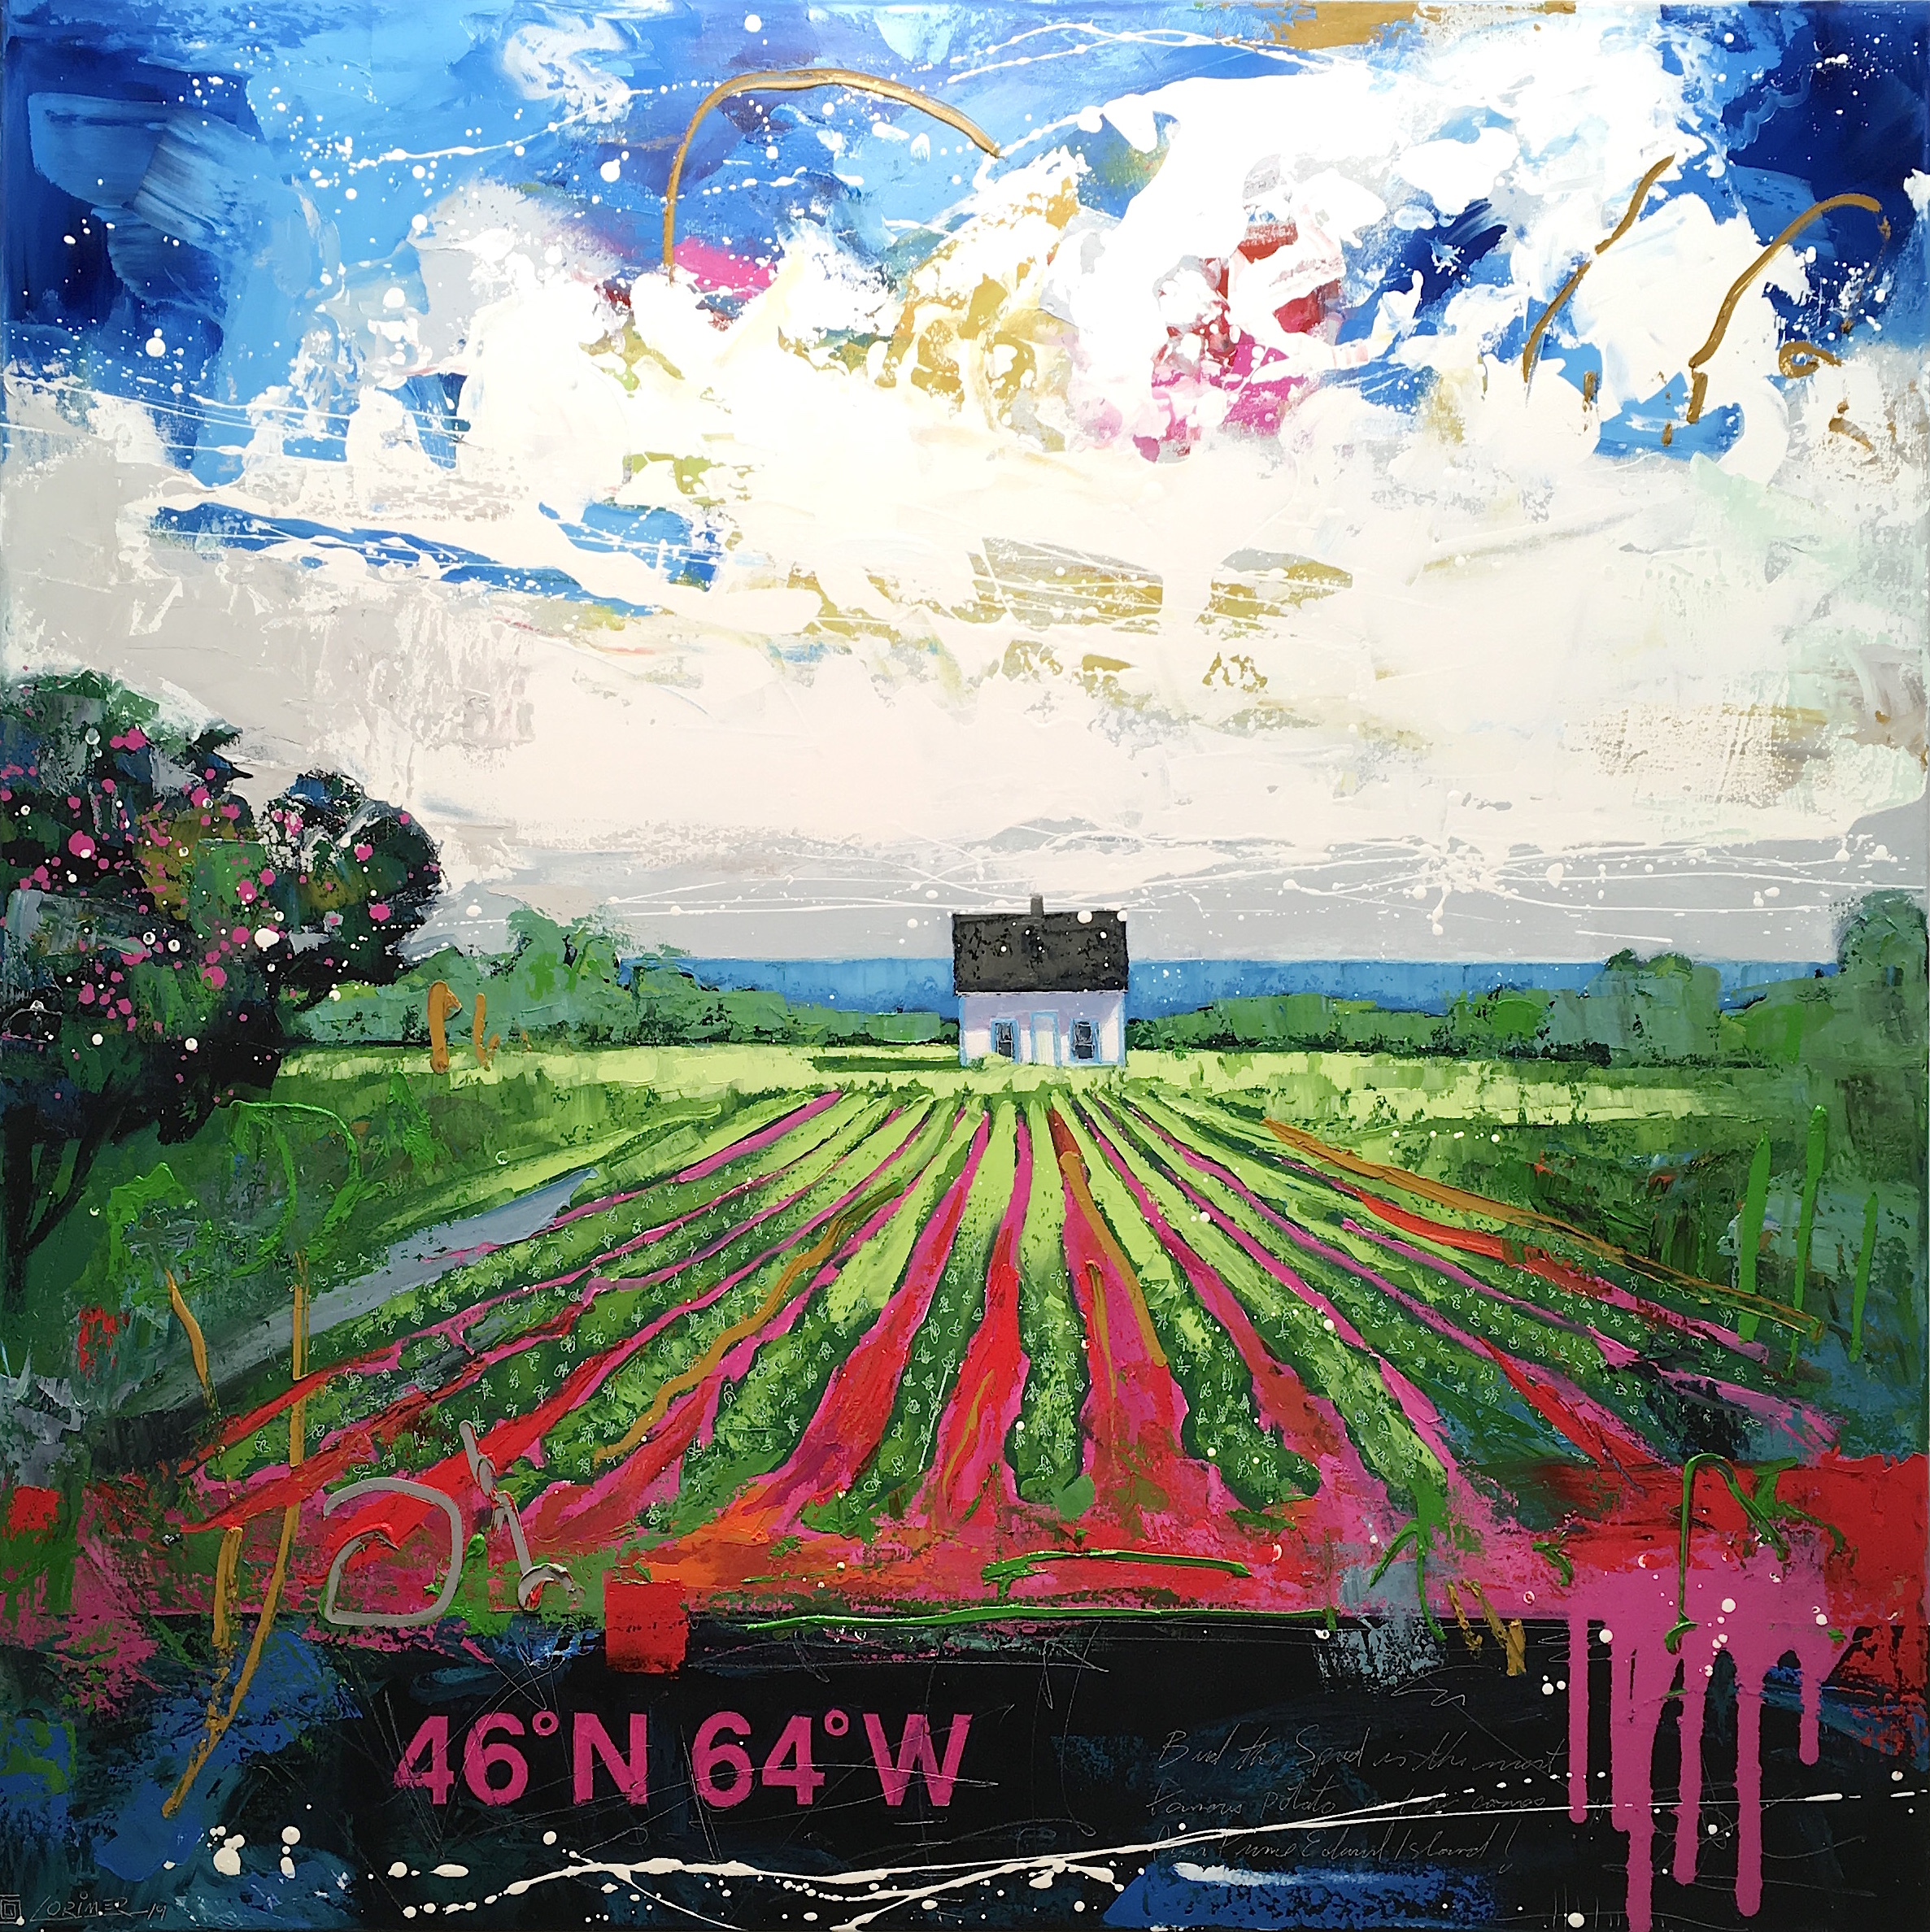 46ºN 64ºW - Potato Field (40" x 40")